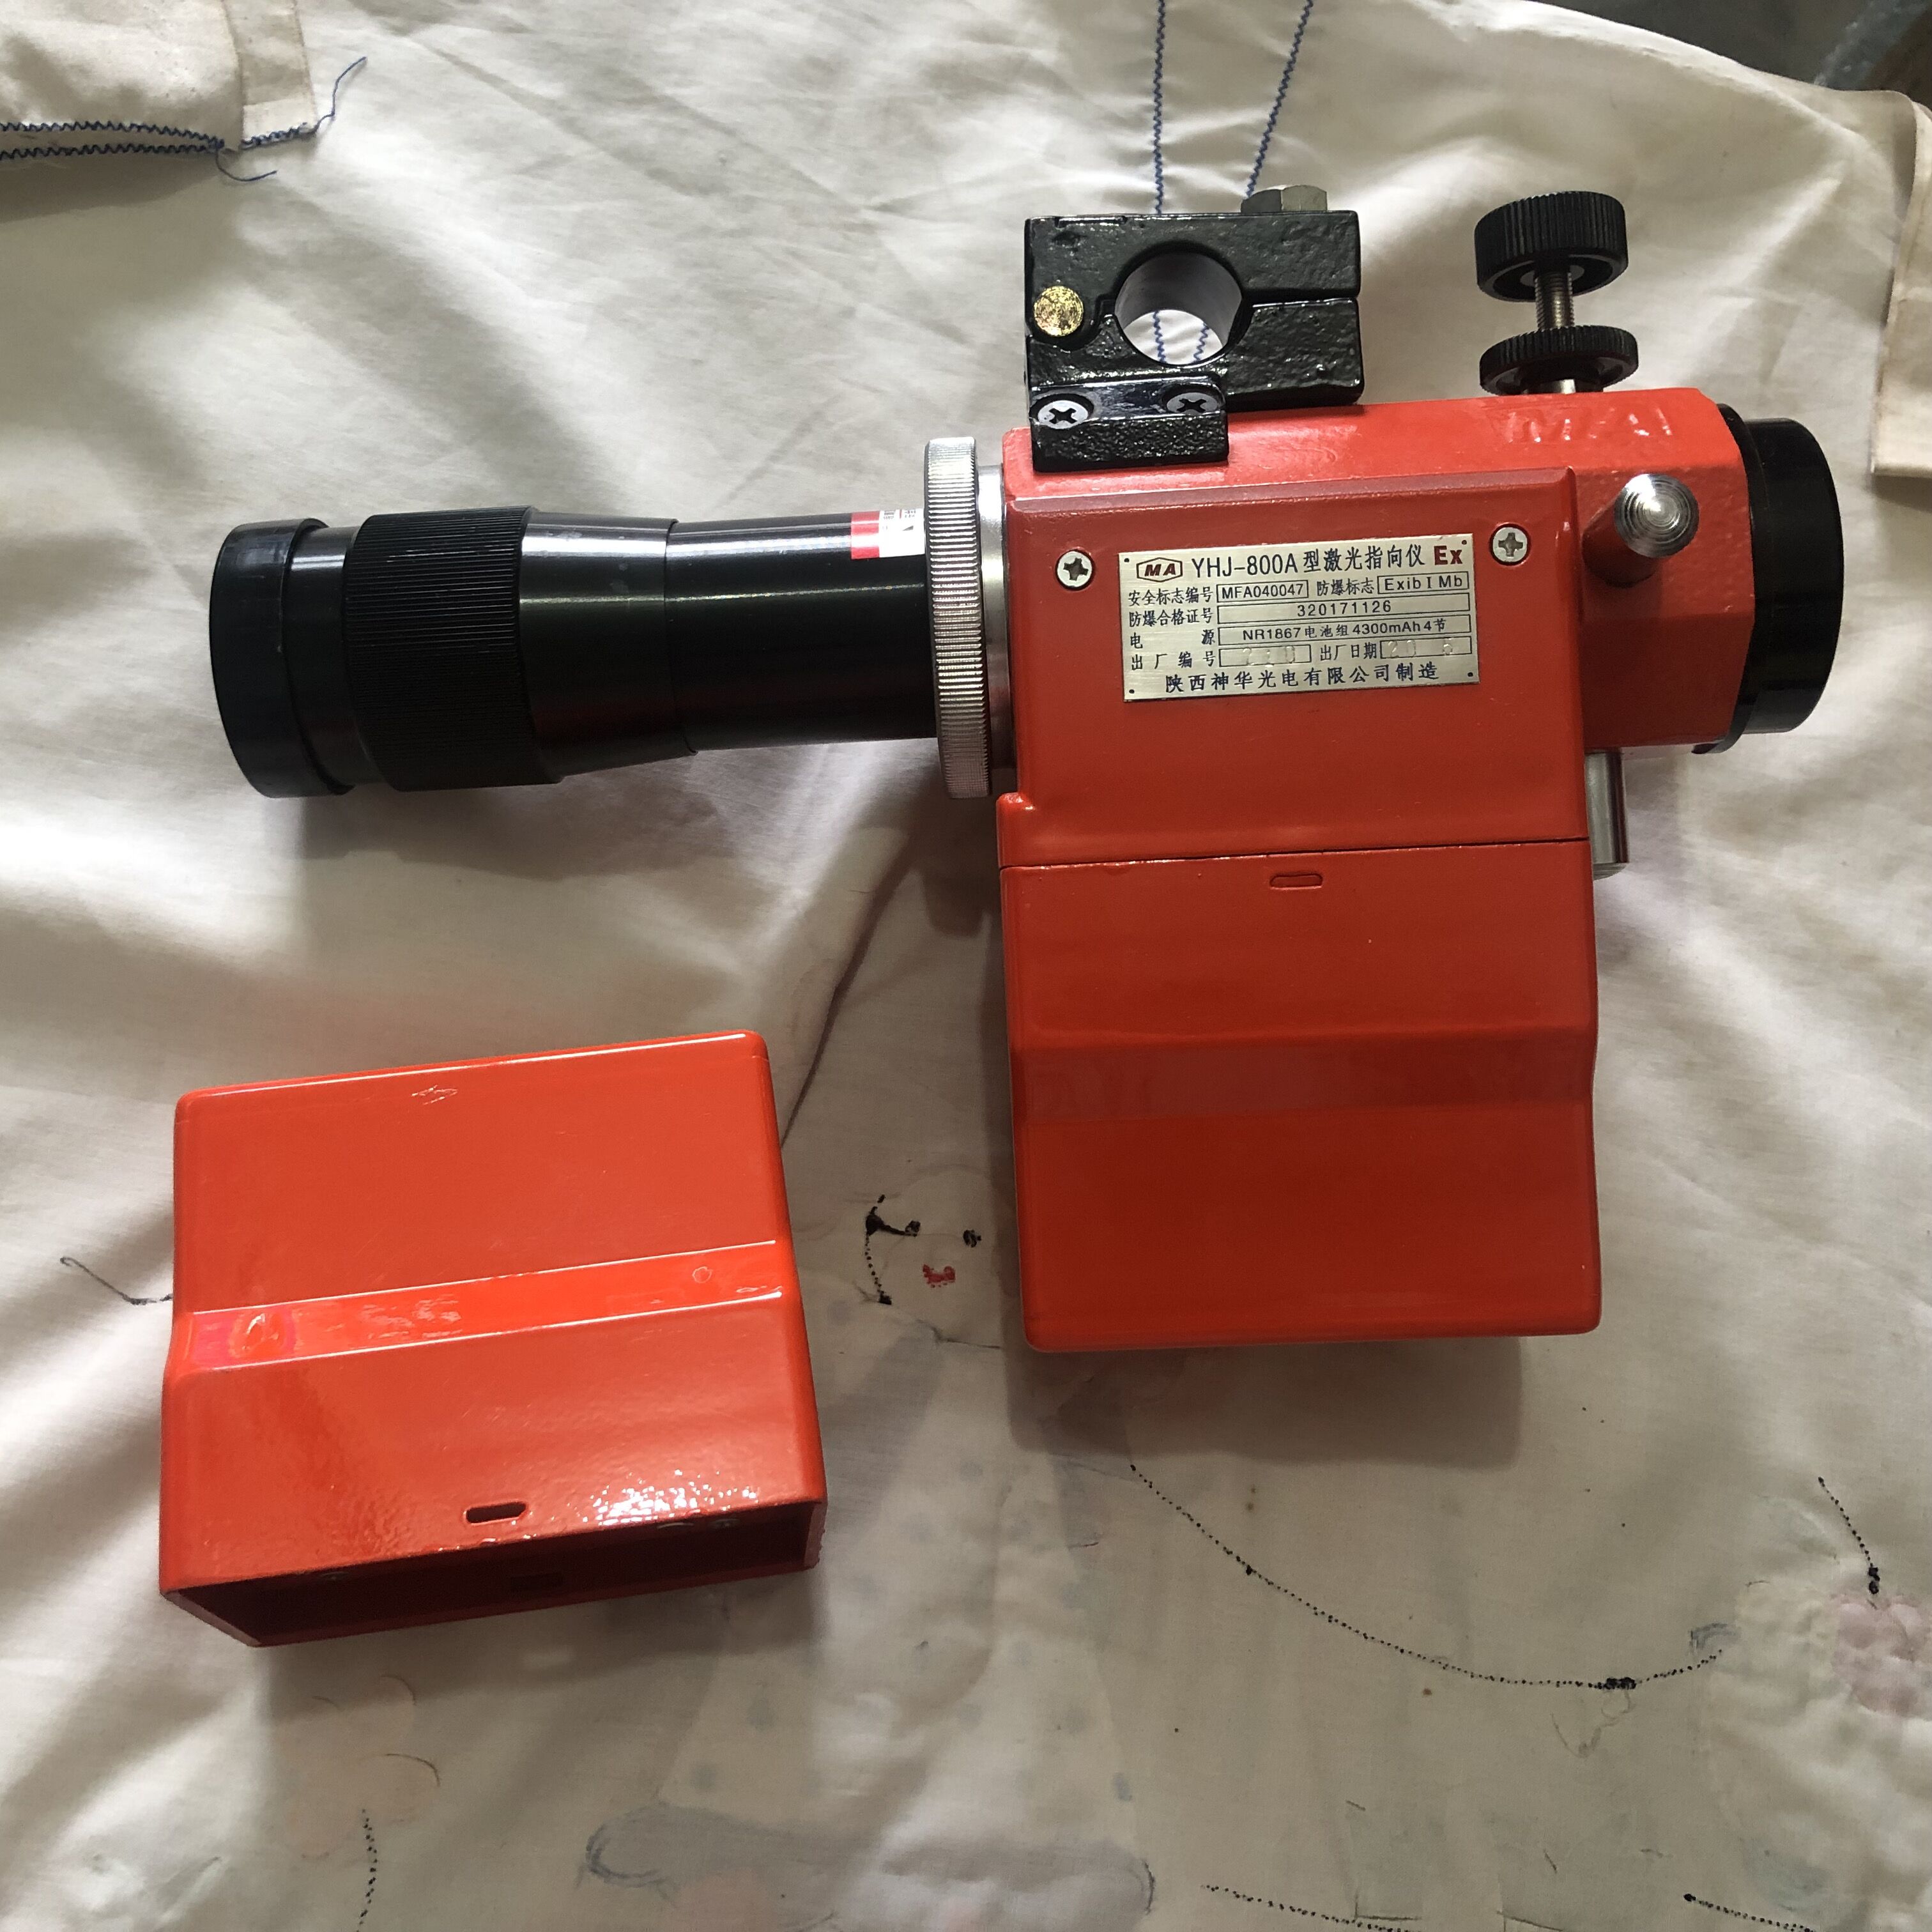 矿业测量仪器 西安YEJ-1200绿光激光指向仪联系激光指向仪维修1